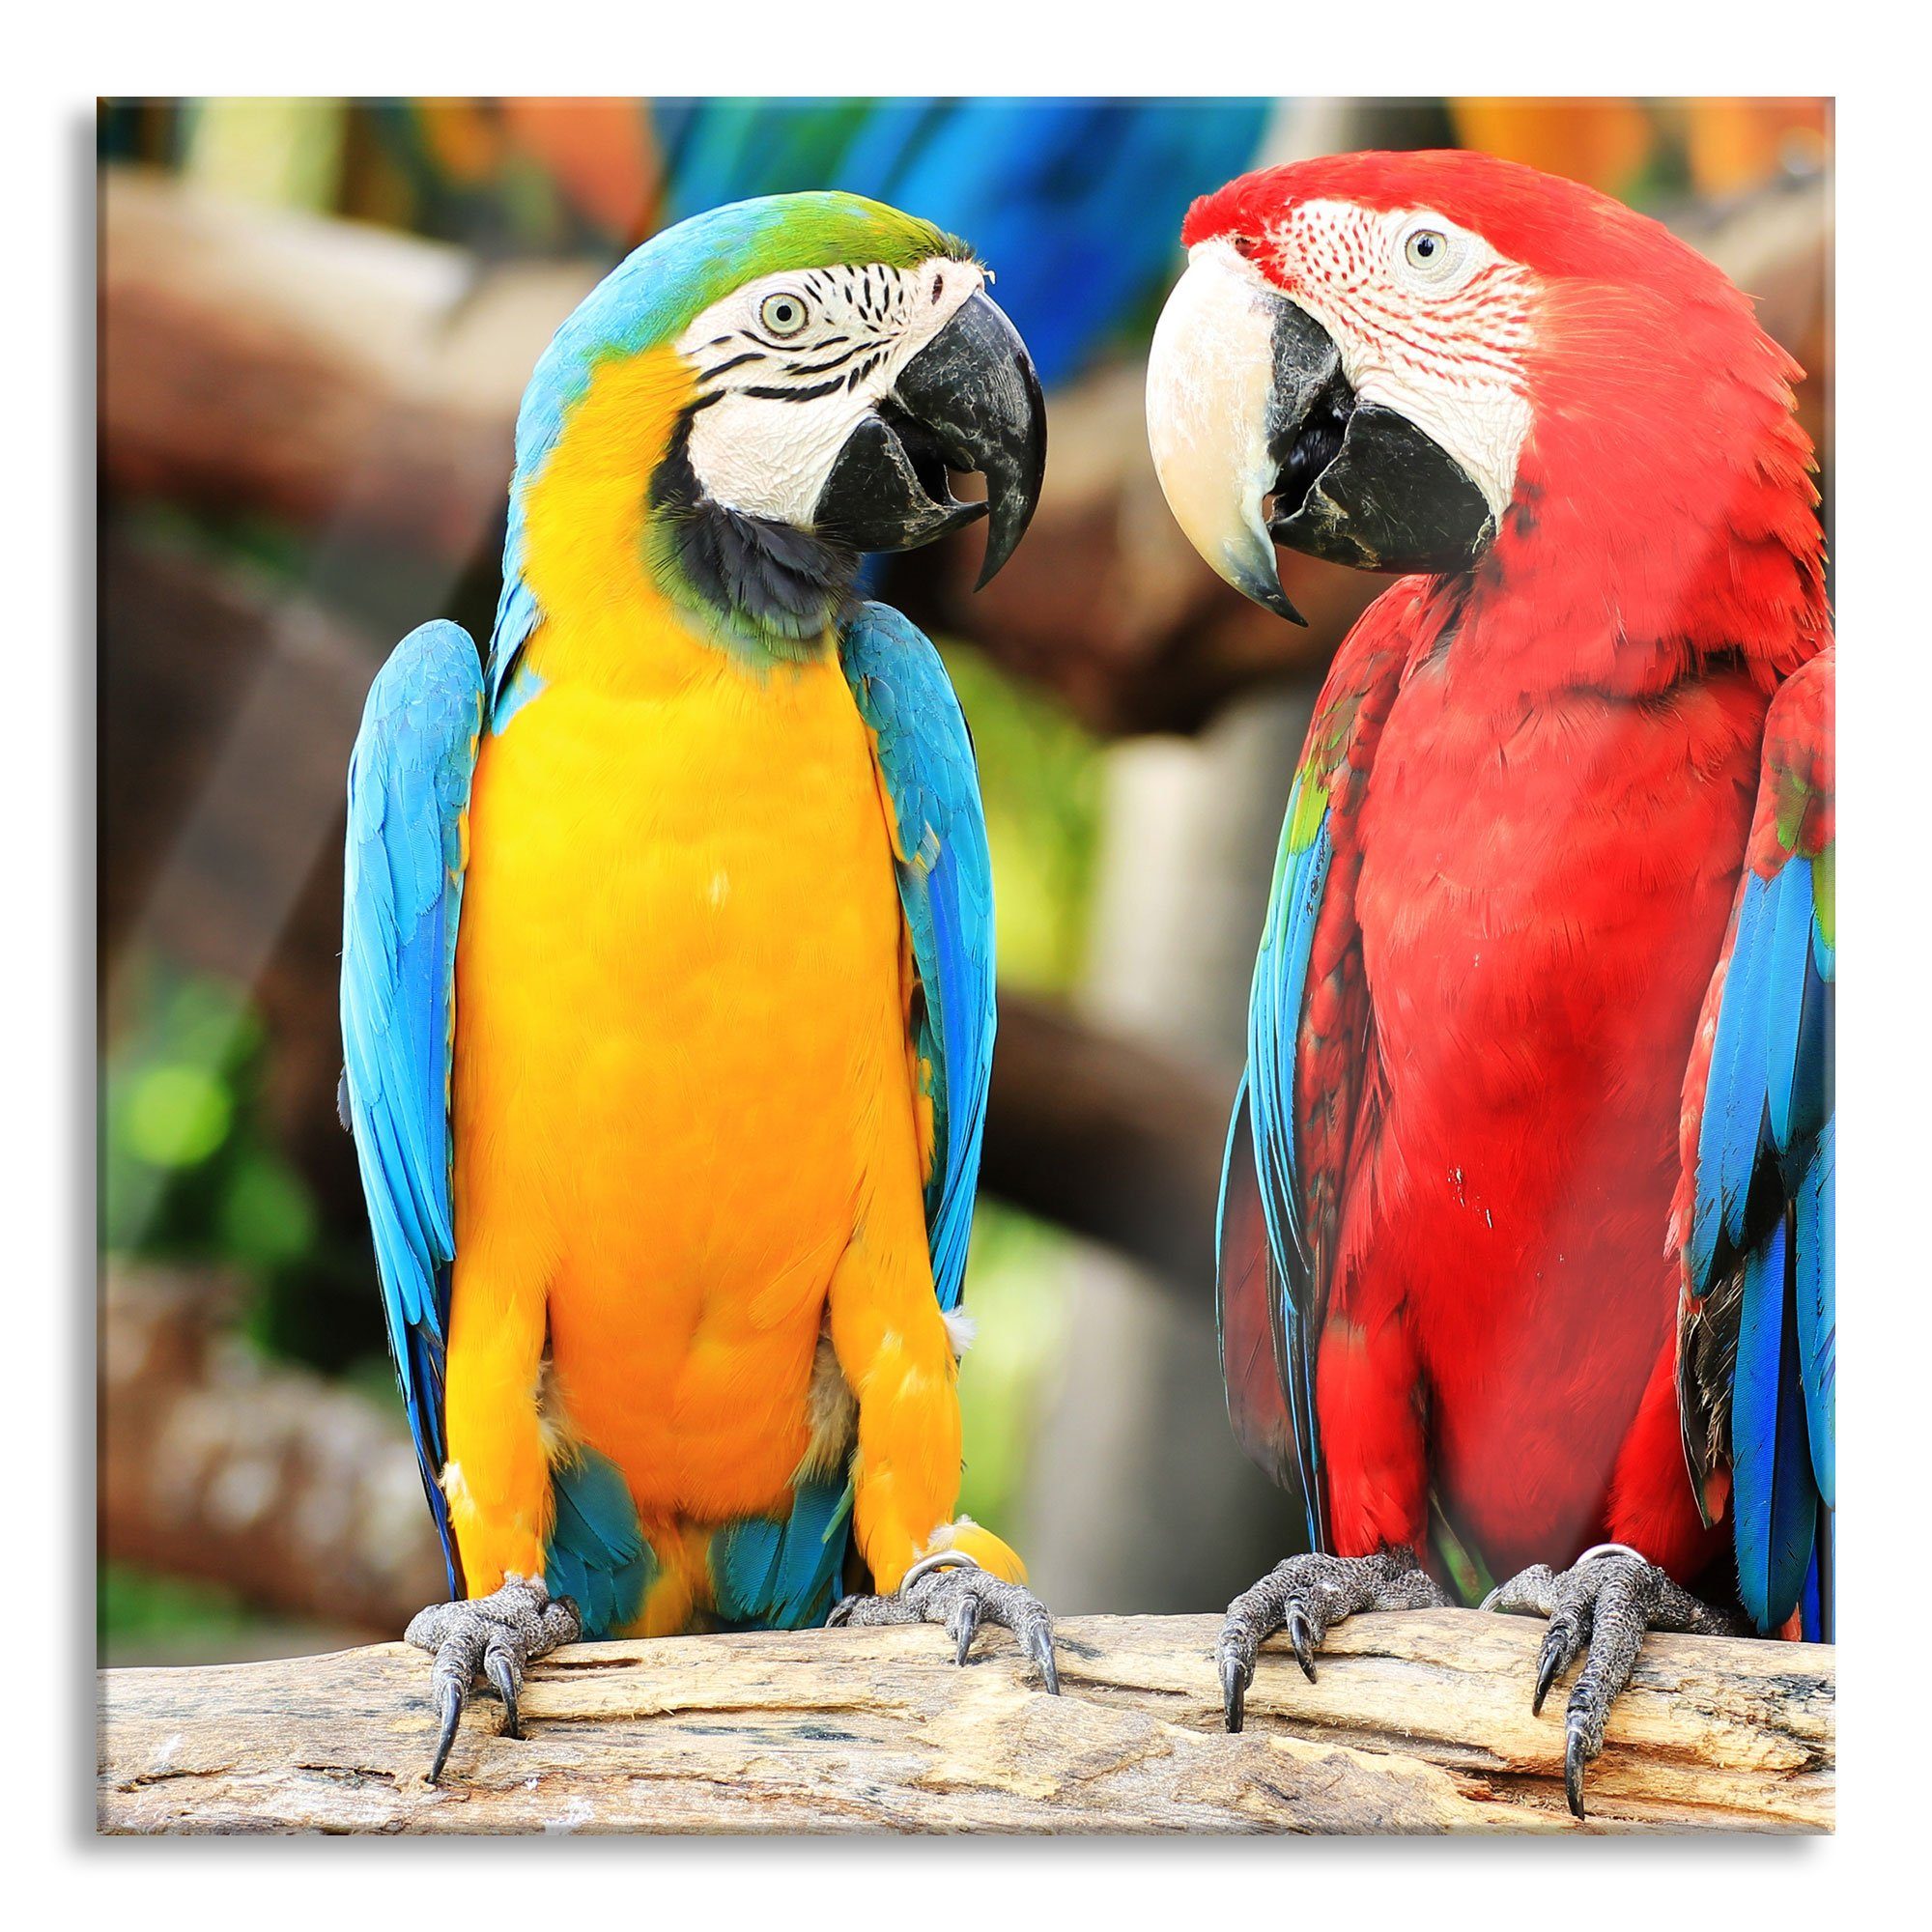 Pixxprint Glasbild Zwei Papageien auf einem Ast, Zwei Papageien auf einem Ast (1 St), Glasbild aus Echtglas, inkl. Aufhängungen und Abstandshalter